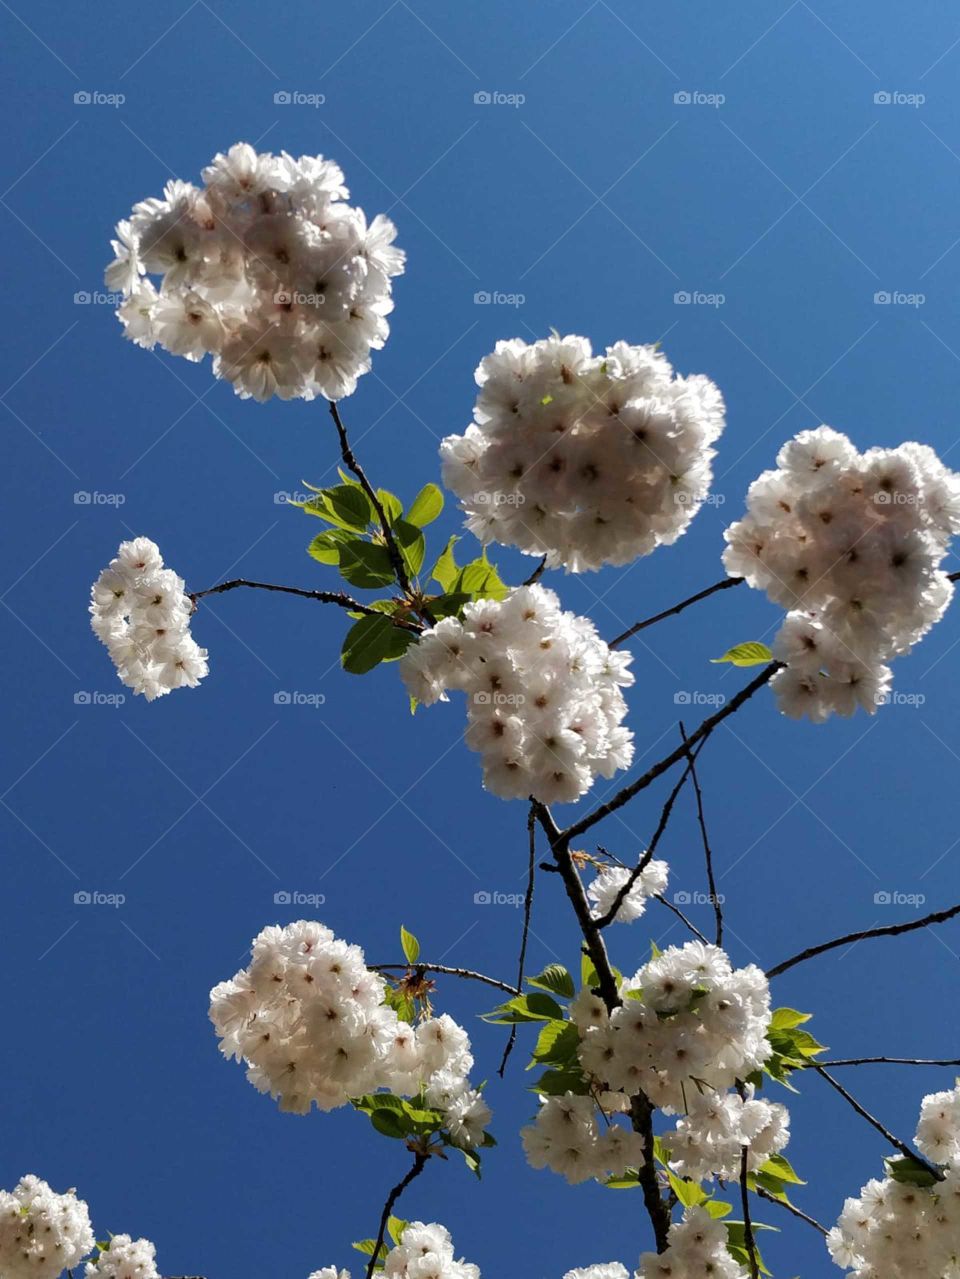 Nice flowers with a blue sky